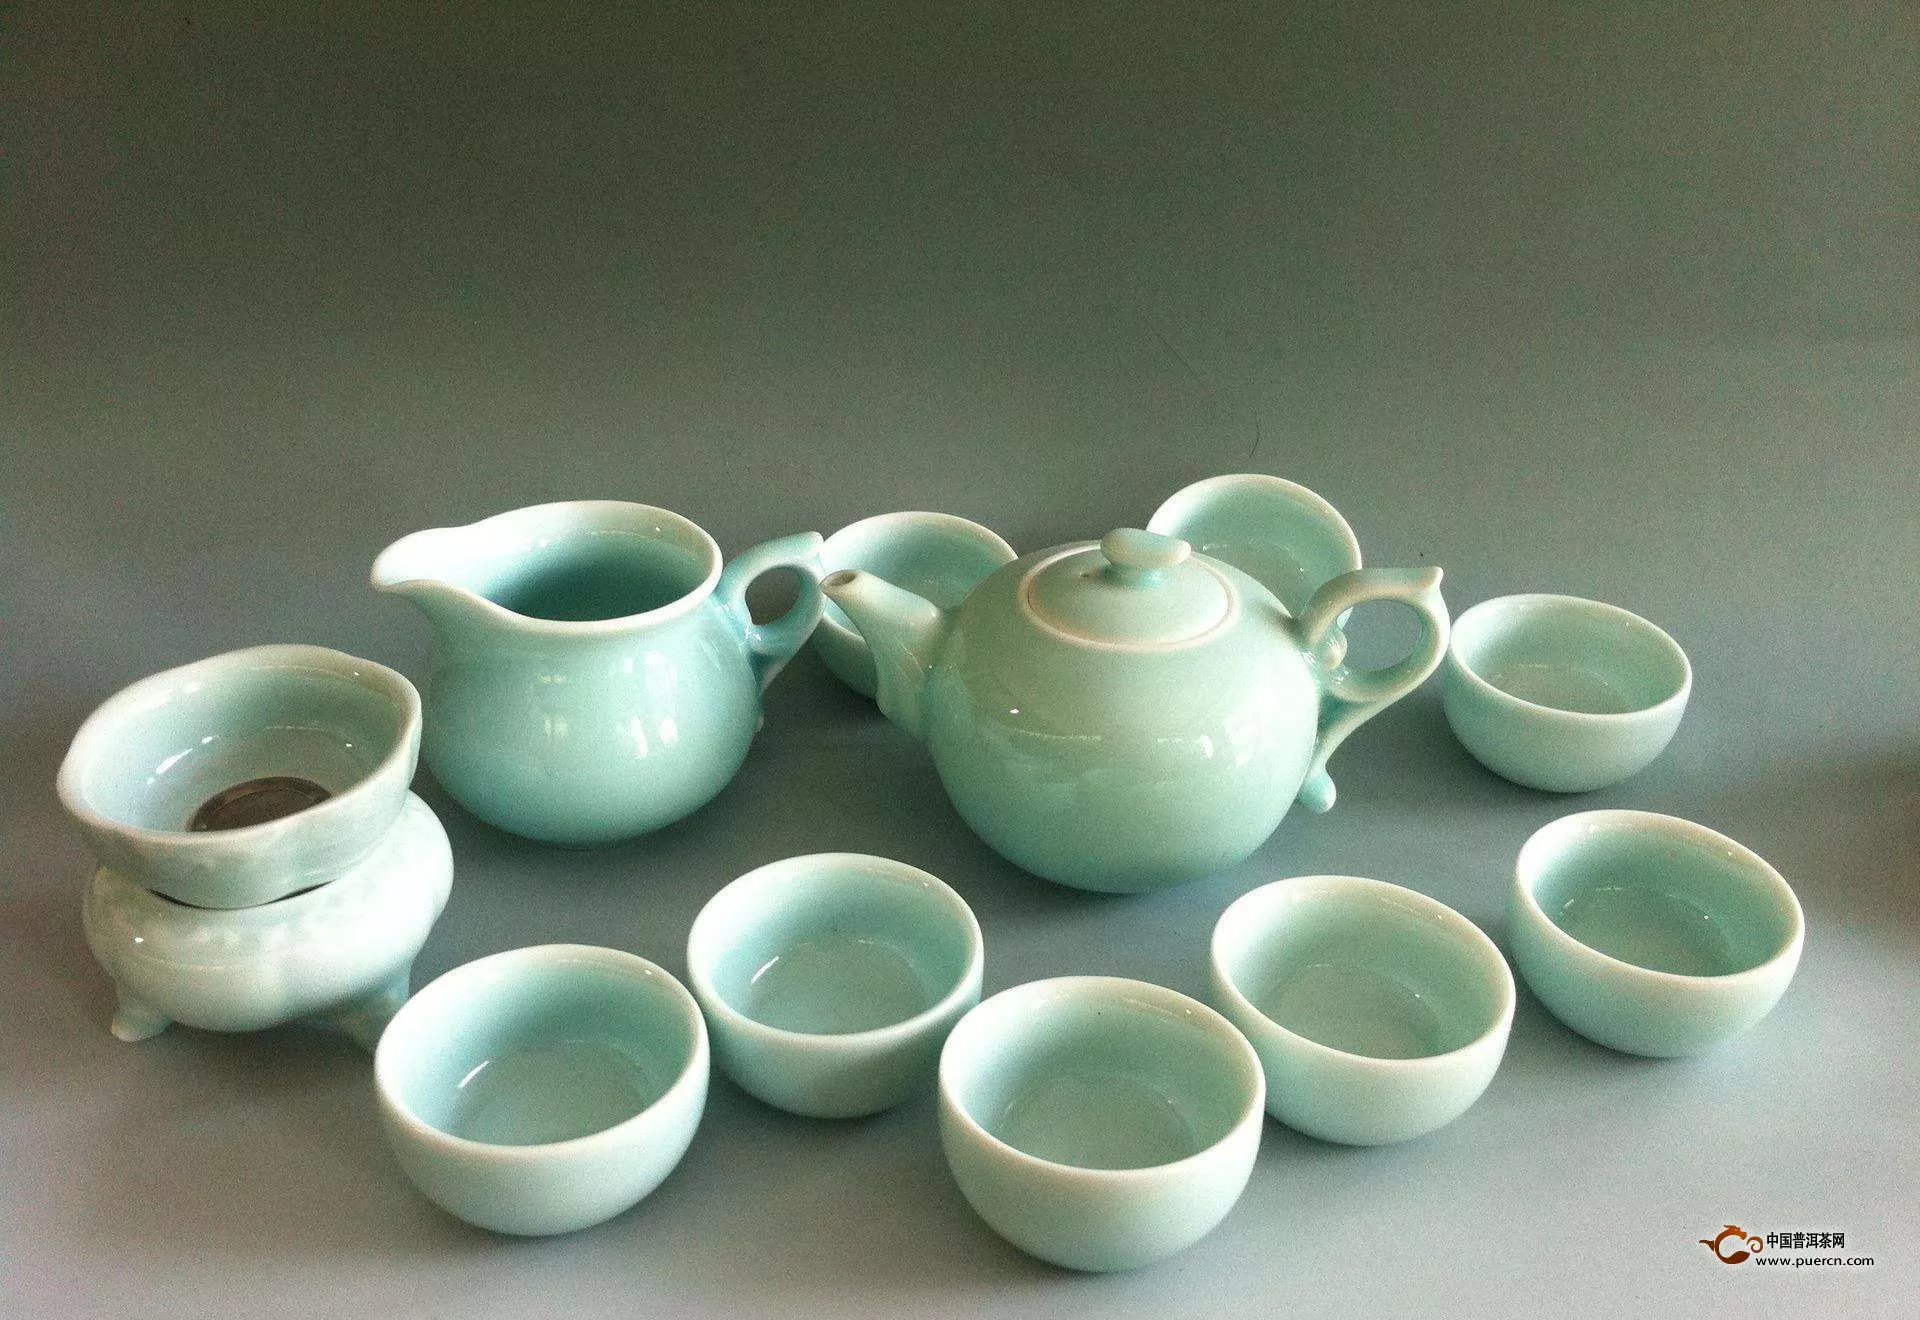 常见的青瓷茶具有哪几种